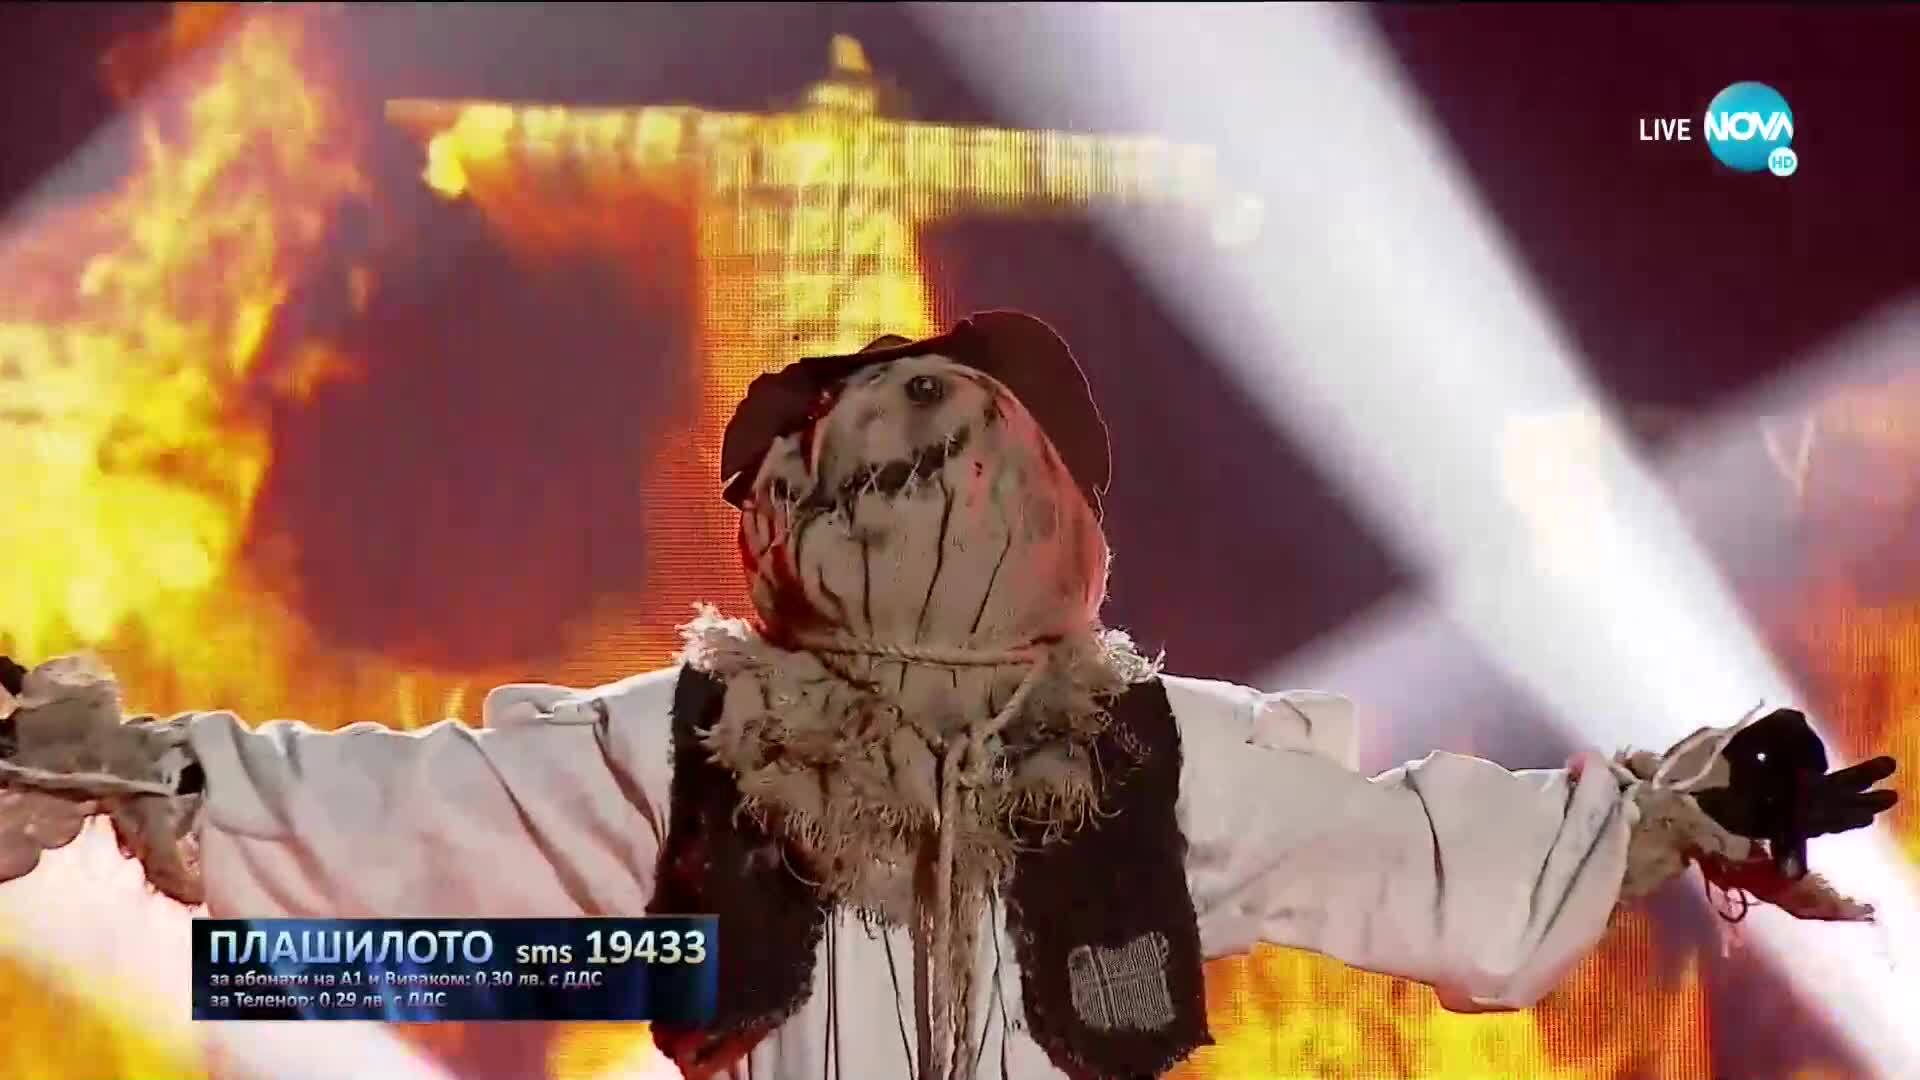 ПЛАШИЛОТО изпълнява "Du Hast" на Rammstein | „Маскираният певец